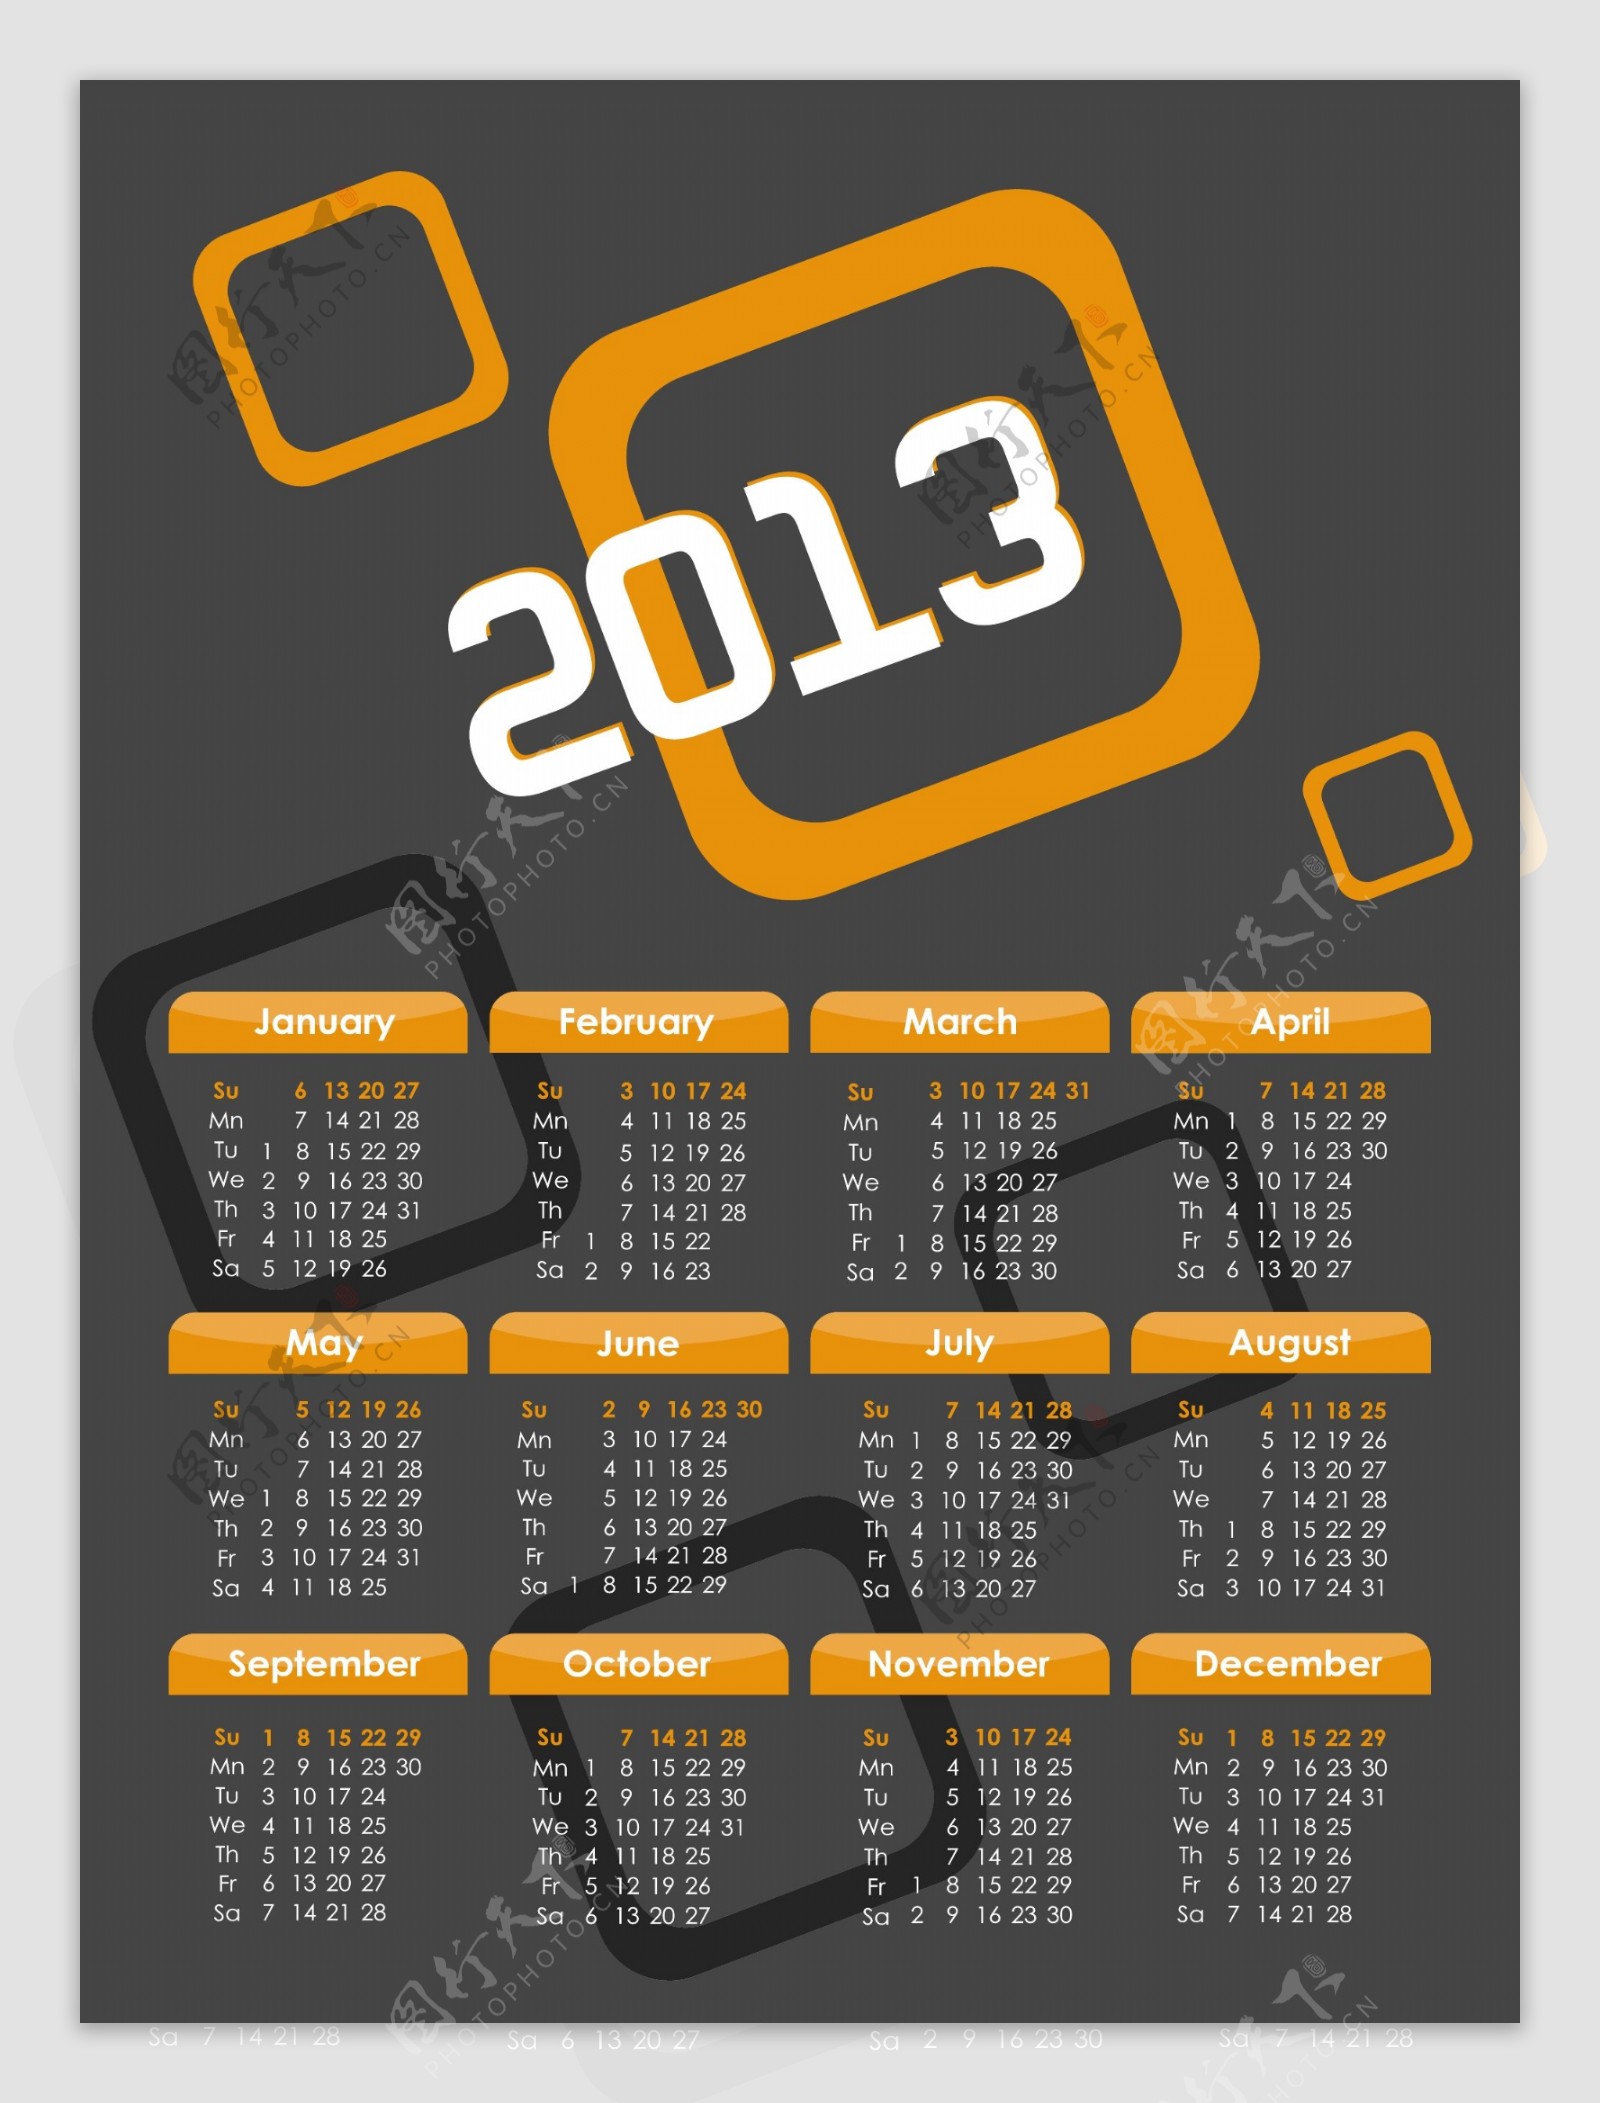 2013年创意日历设计素材